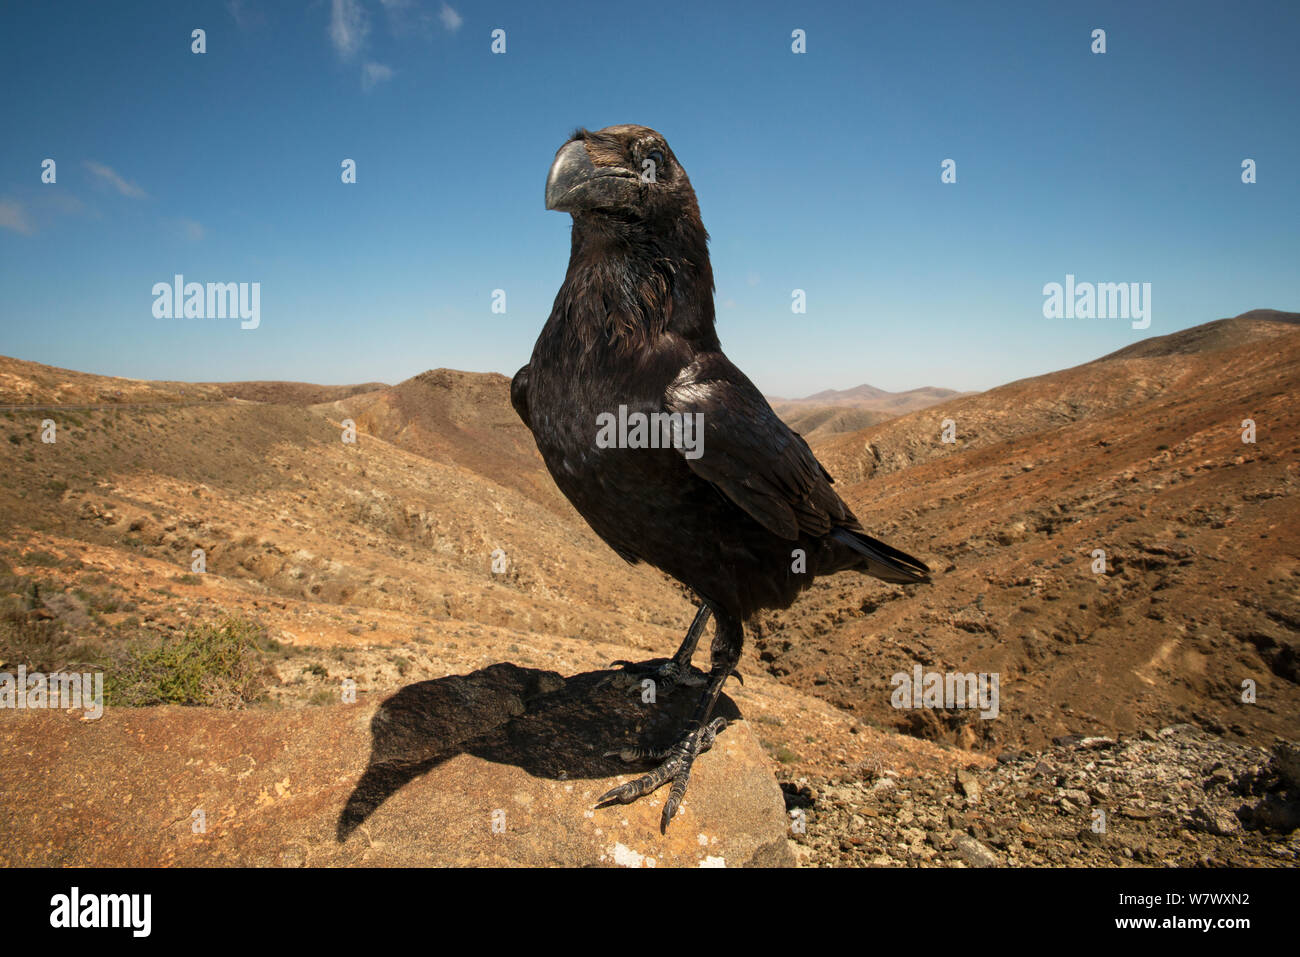 Grand corbeau (Corvus corax), connu localement sous le nom de &# 39;Geronimo&# 39 ;. Fuerteventura, Îles Canaries, Espagne. Avril. Banque D'Images